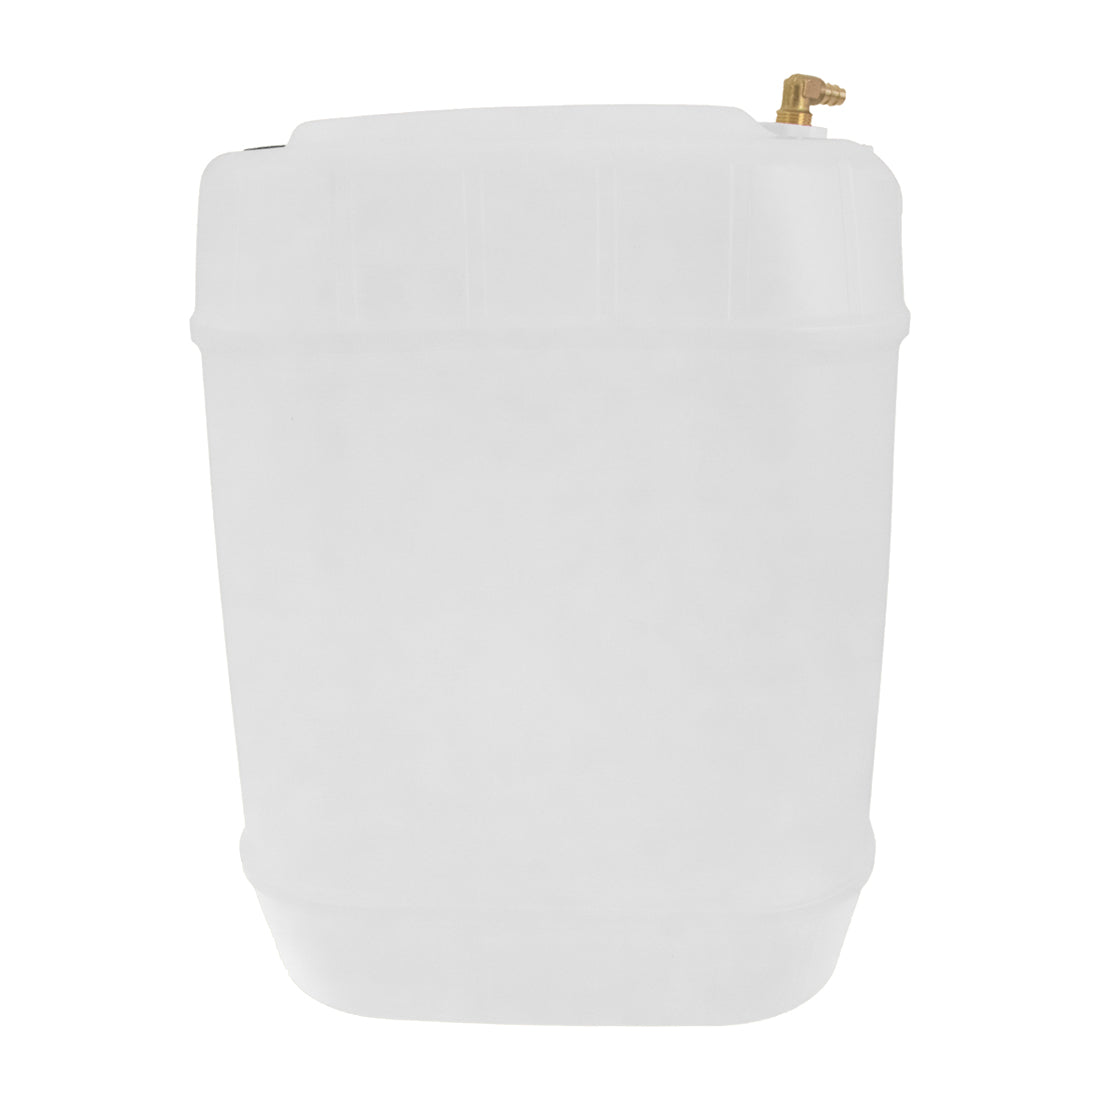 6 Gallon Plastic Bucket, Open Head - White